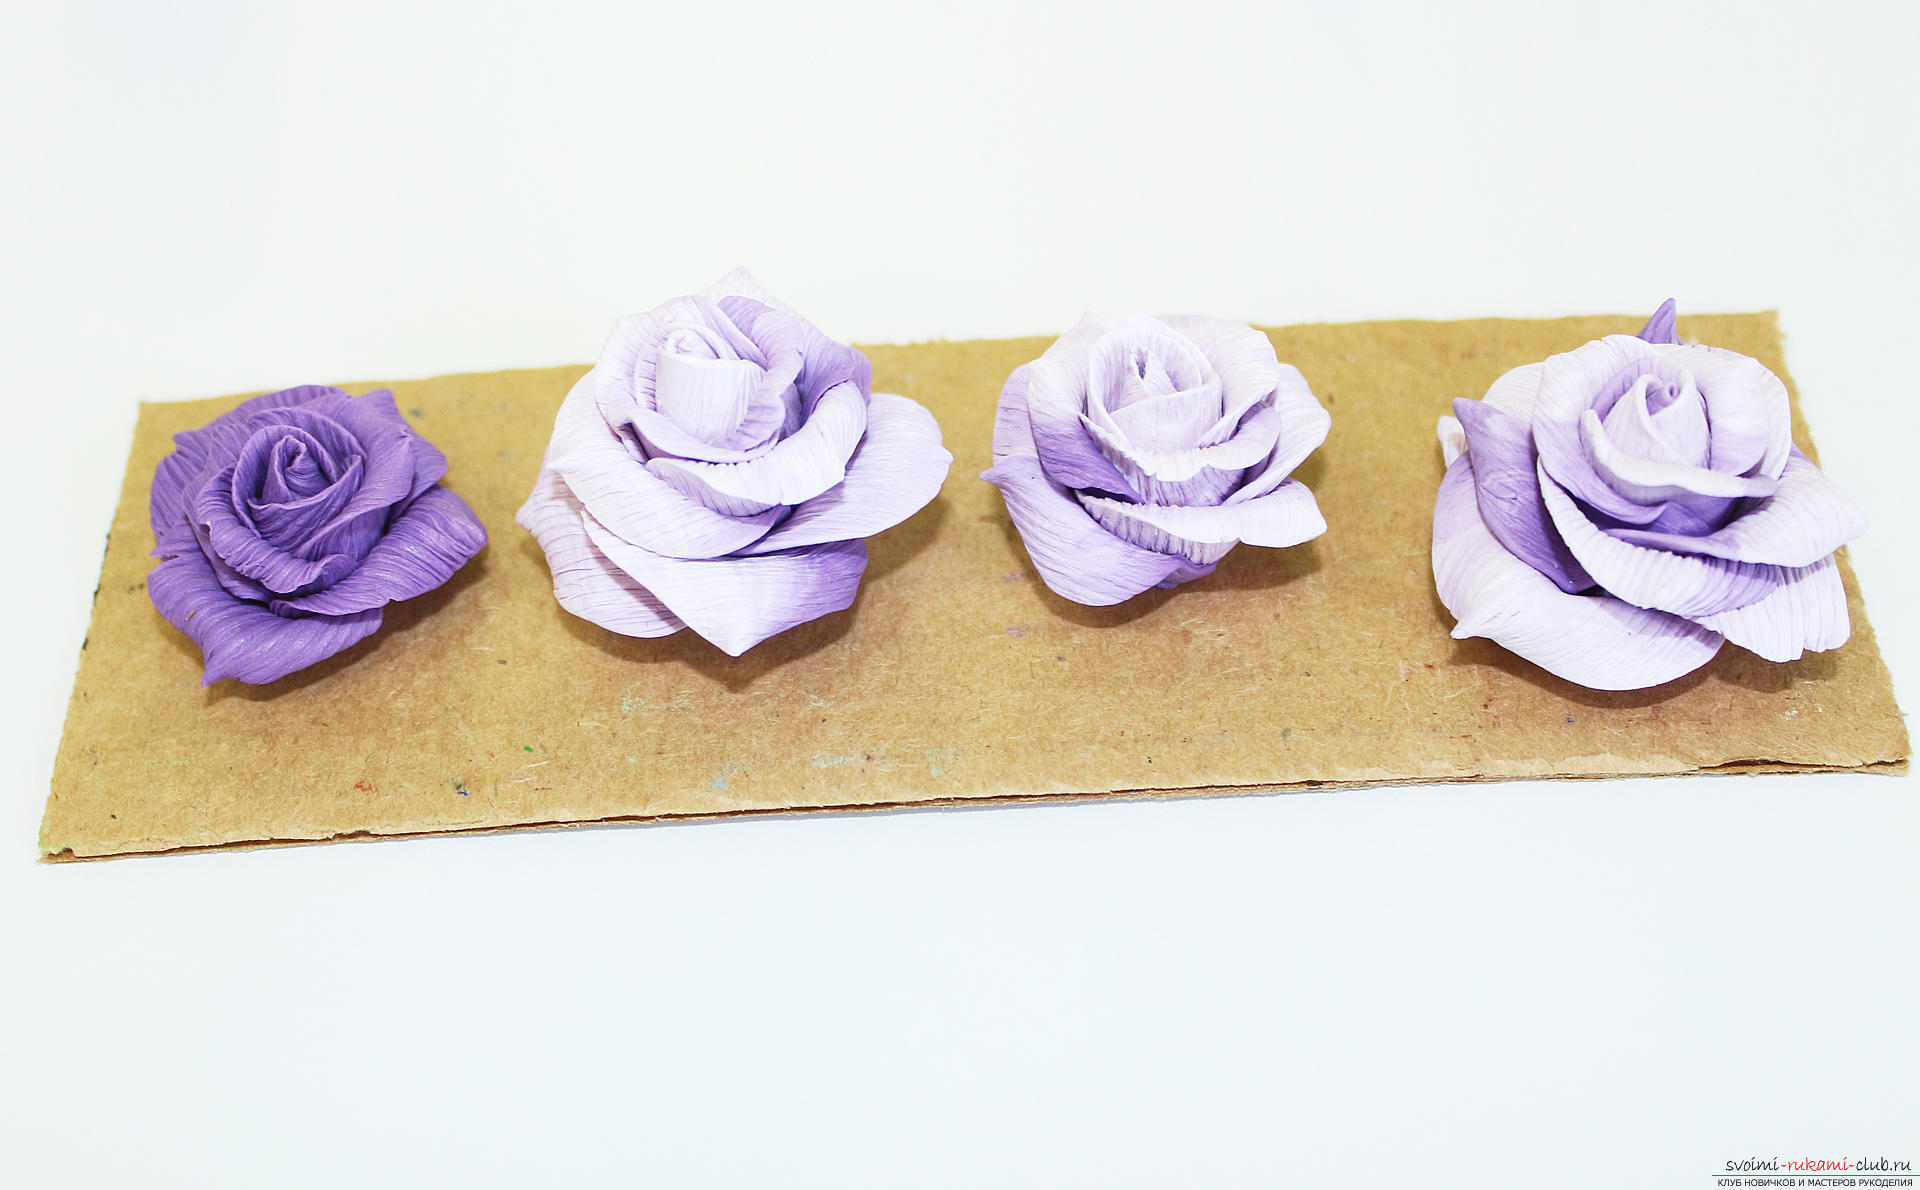 Deze masterclass met een foto en beschrijving leert je hoe je bloemen - rozen - kunt maken uit polymeerklei in textuurtechnologie